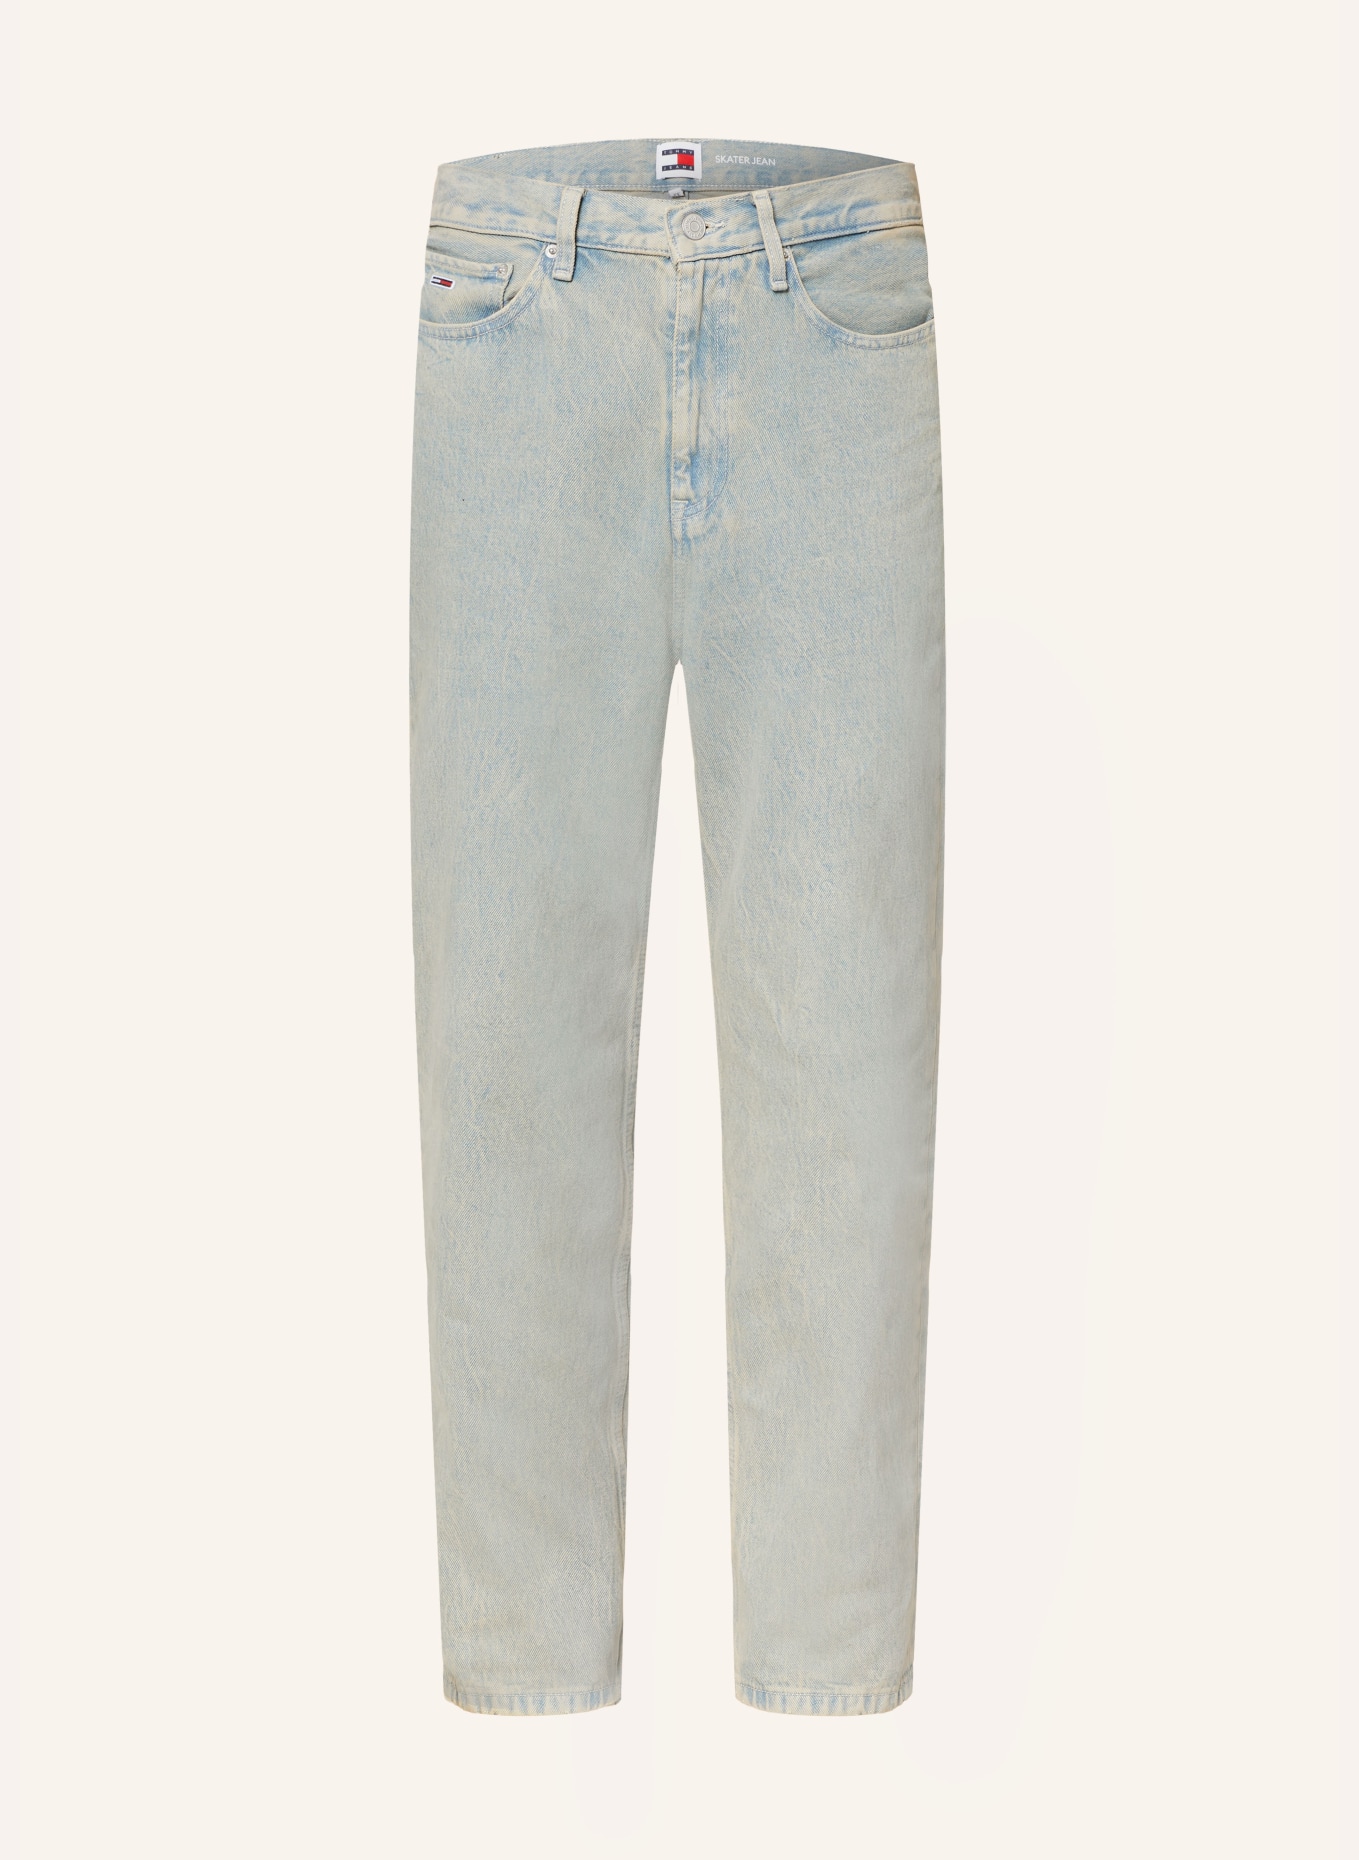 TOMMY JEANS Jeans SKATER Loose Fit, Farbe: 1CD Denim Color (Bild 1)